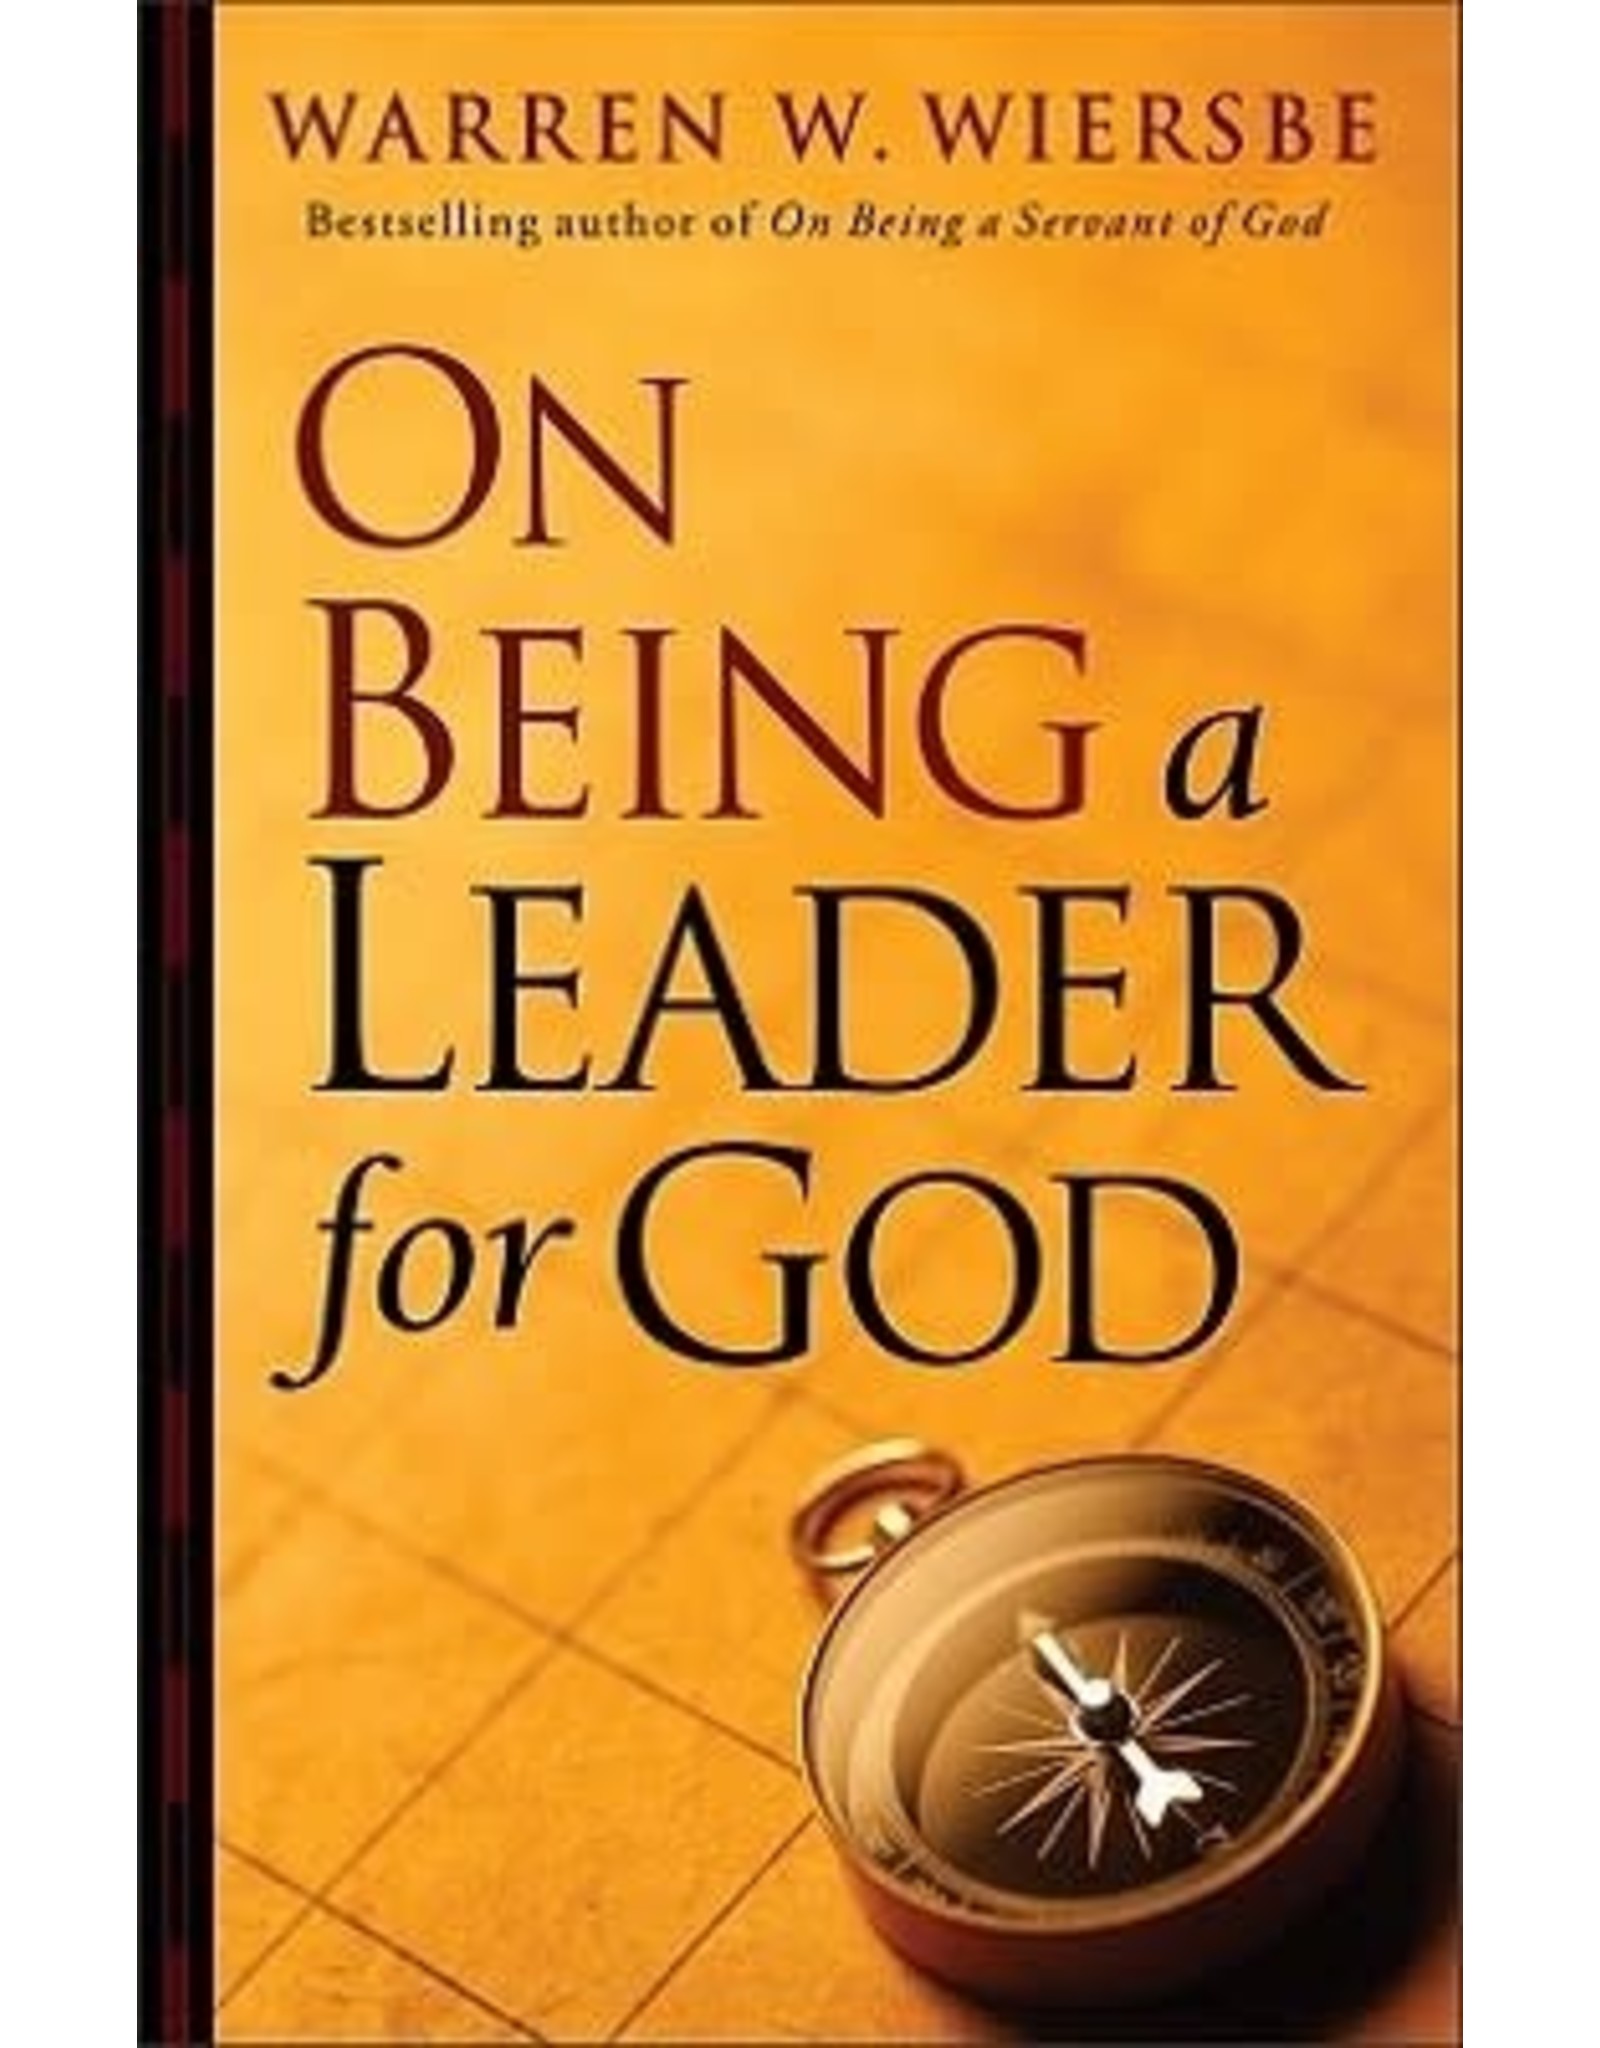 Warren W Wiersbe On Being a Leader for God